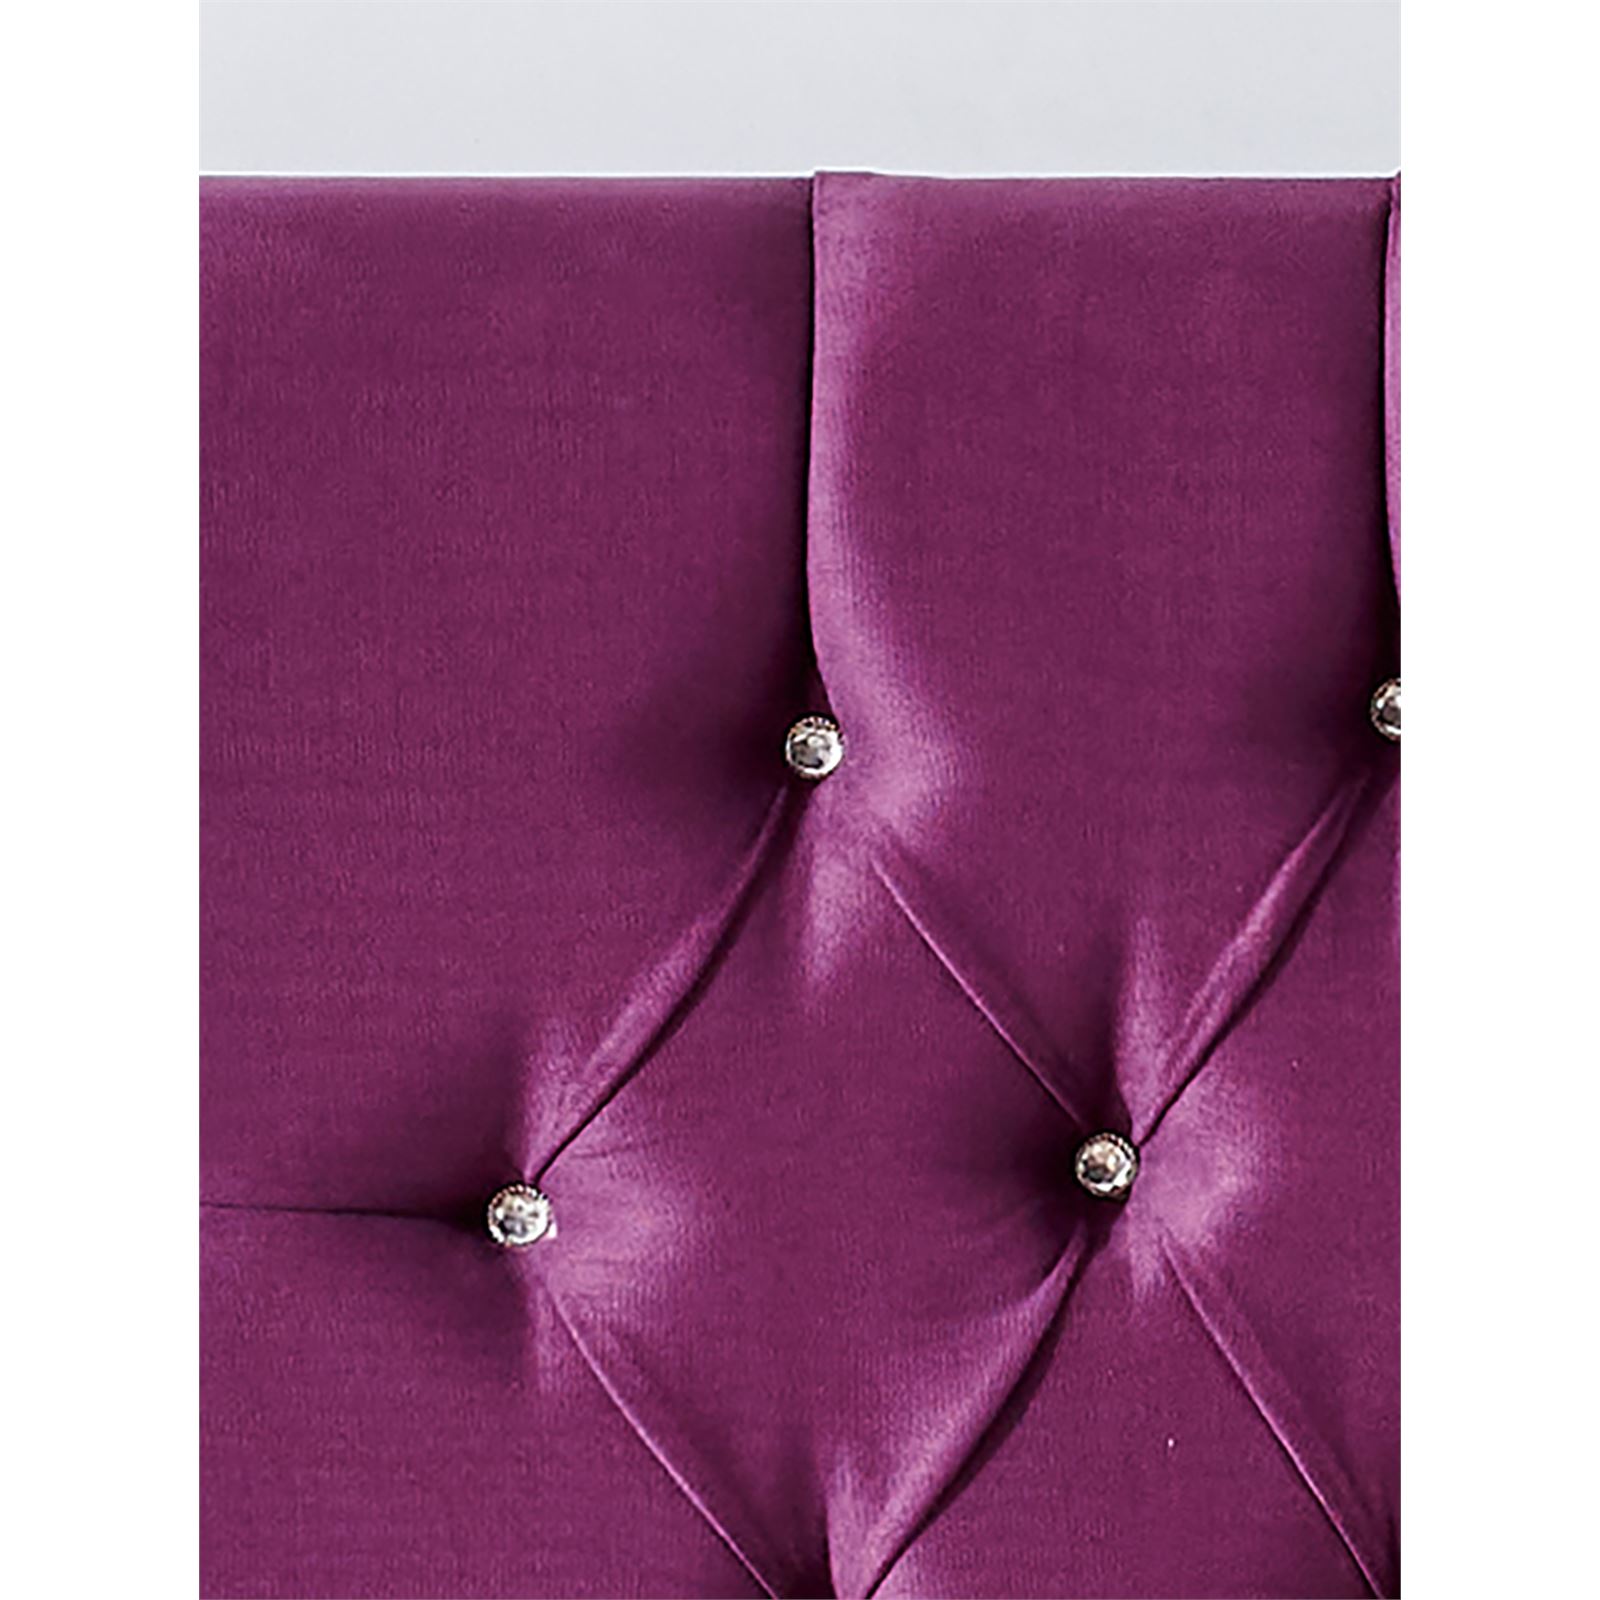 Niron Violet Yatak Seti 160x200 cm Çift Kişilik Yatak Baza Başlık Takımı Orta Sert Yatak Baza ve Başlığı Mor